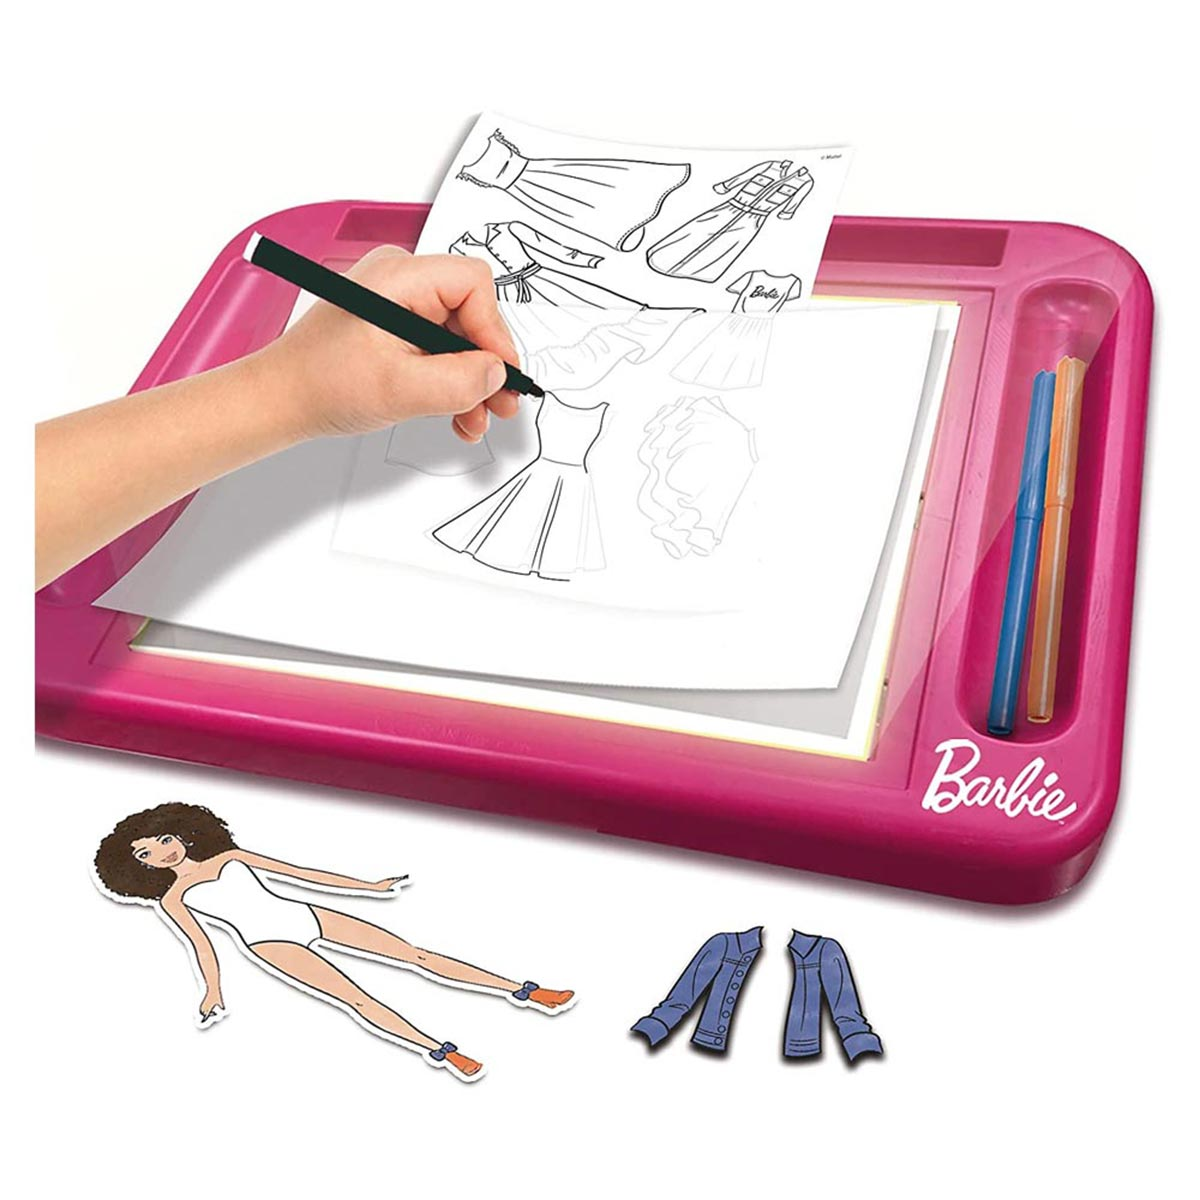 Barbie Fashion Lisciani Barbie Barbie Atelier Puppe, mit mehrfarbig Lernspiele, von BARBIE